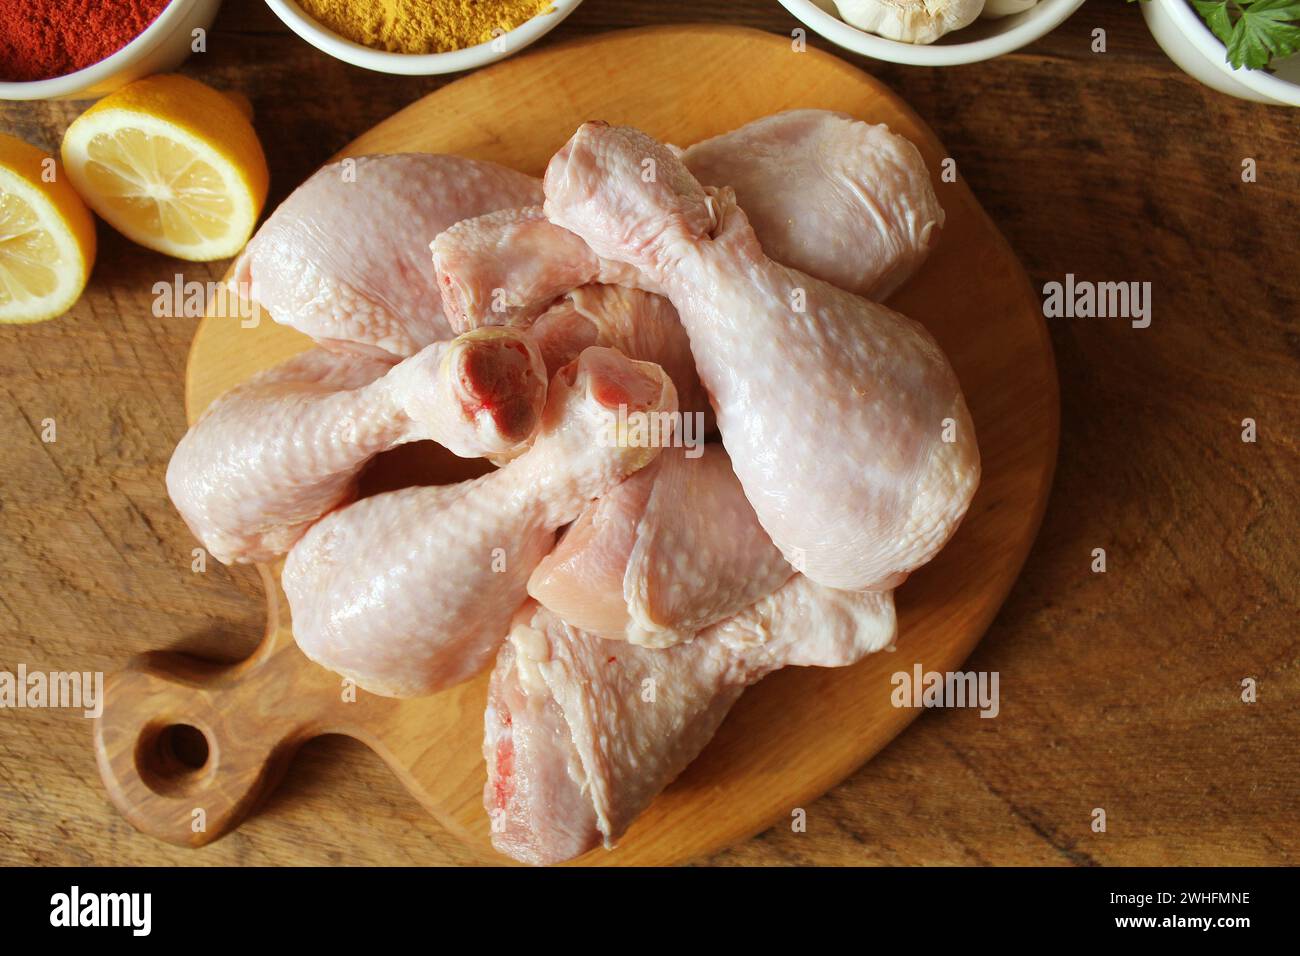 Cuisses de poulet non cuit brut, les pilons sur une planche à découper, la viande avec les ingrédients pour la cuisson Banque D'Images